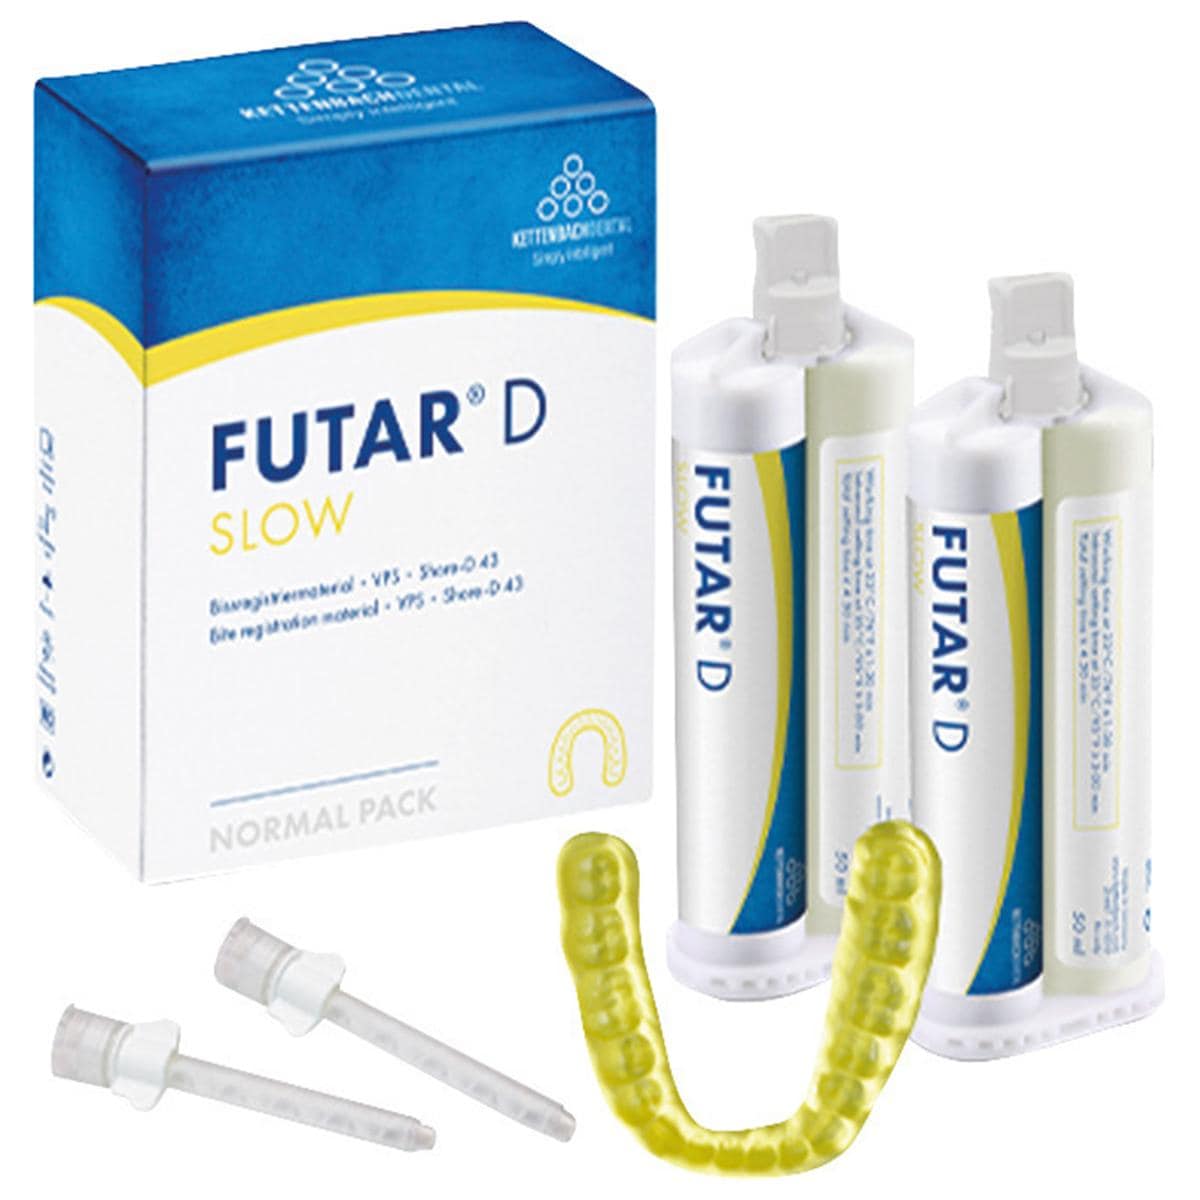 Futar® D Slow - Nachfüllpackung - Kartuschen 2 x 50 ml